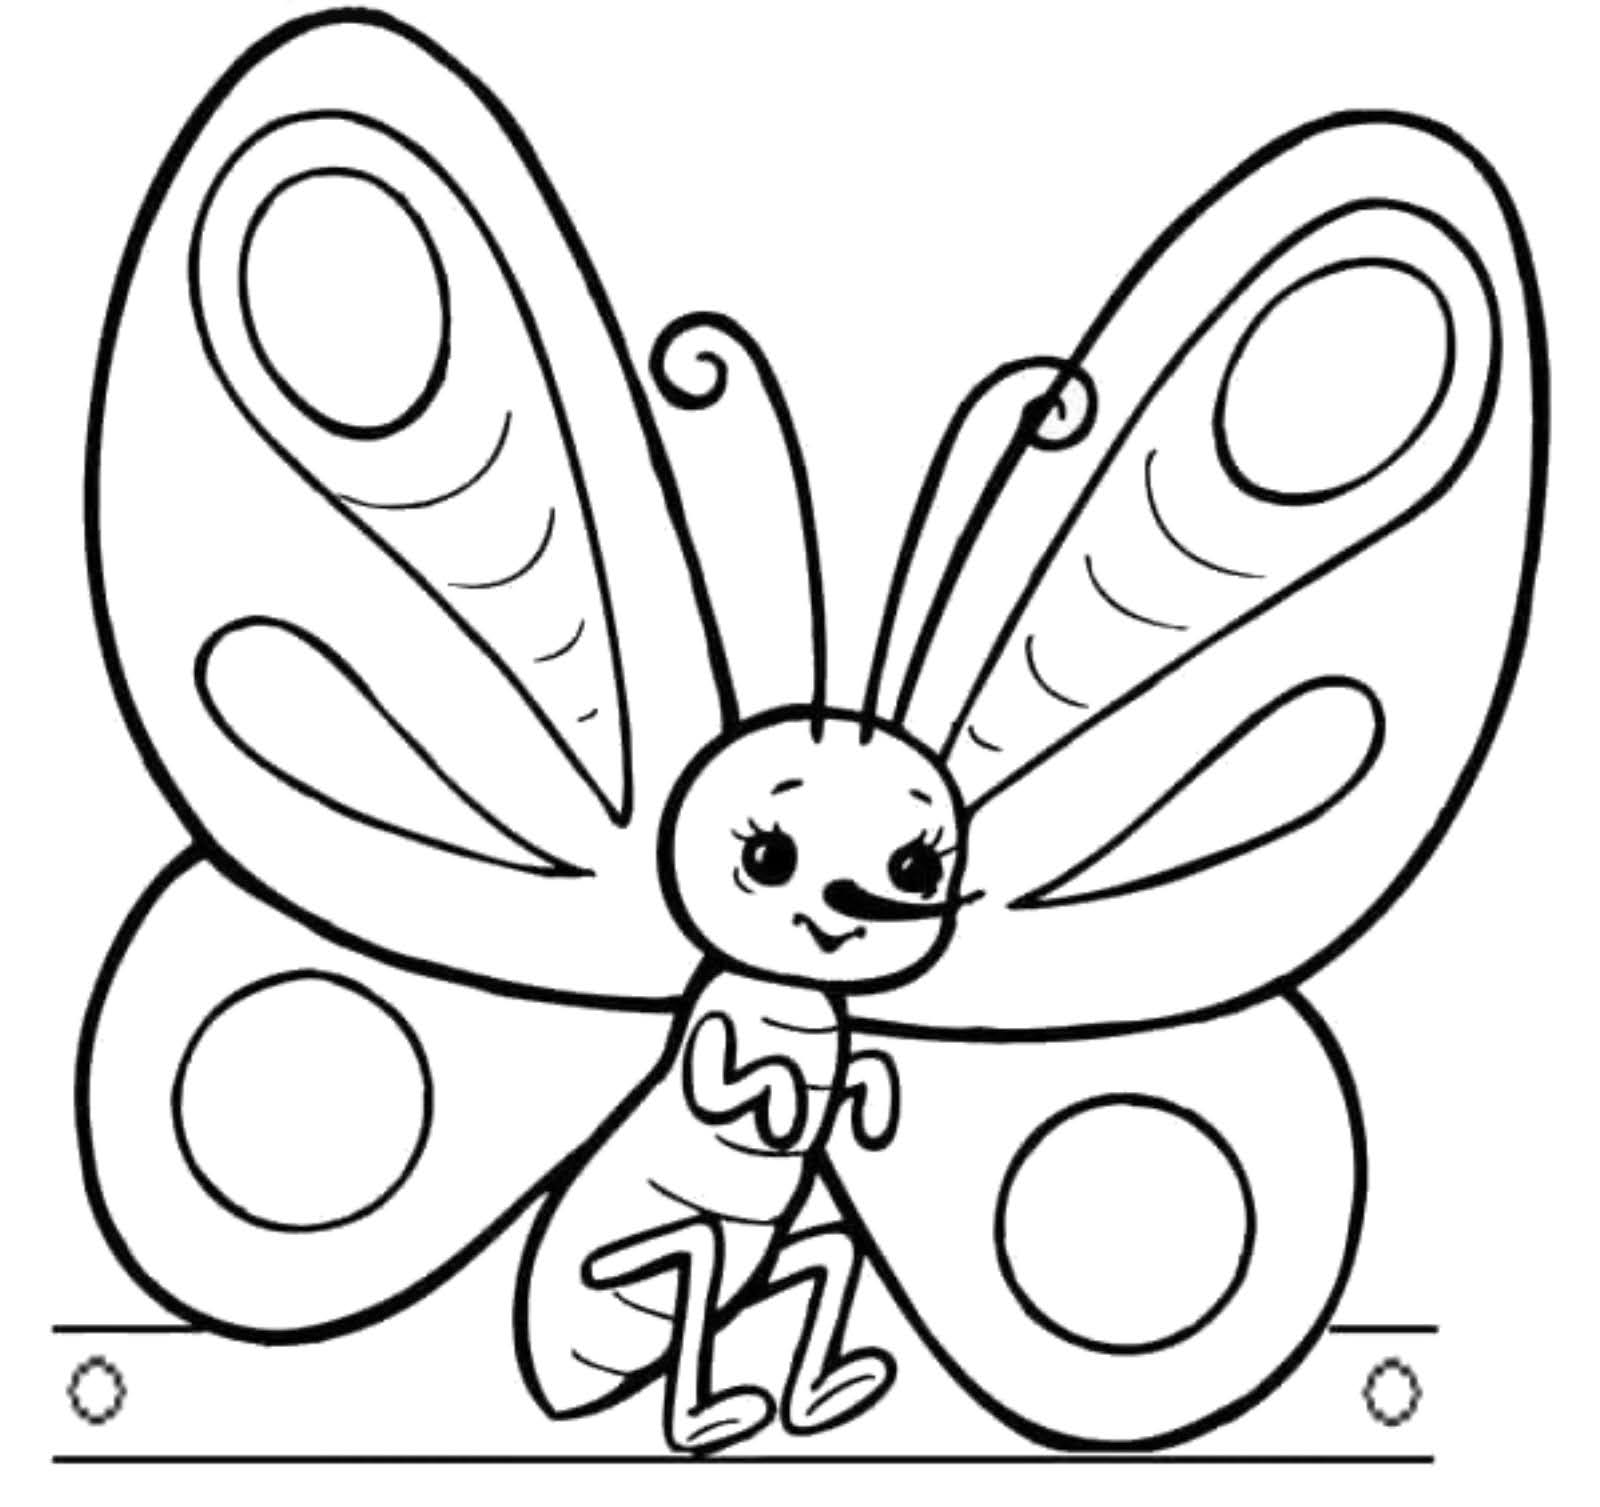 Раскраска насекомые для детей 3 4 лет. Бабочка раскраска для детей. Насекомые раскраска для детей. Бабочка раскраска для малышей. Детские раскраски бабочки.